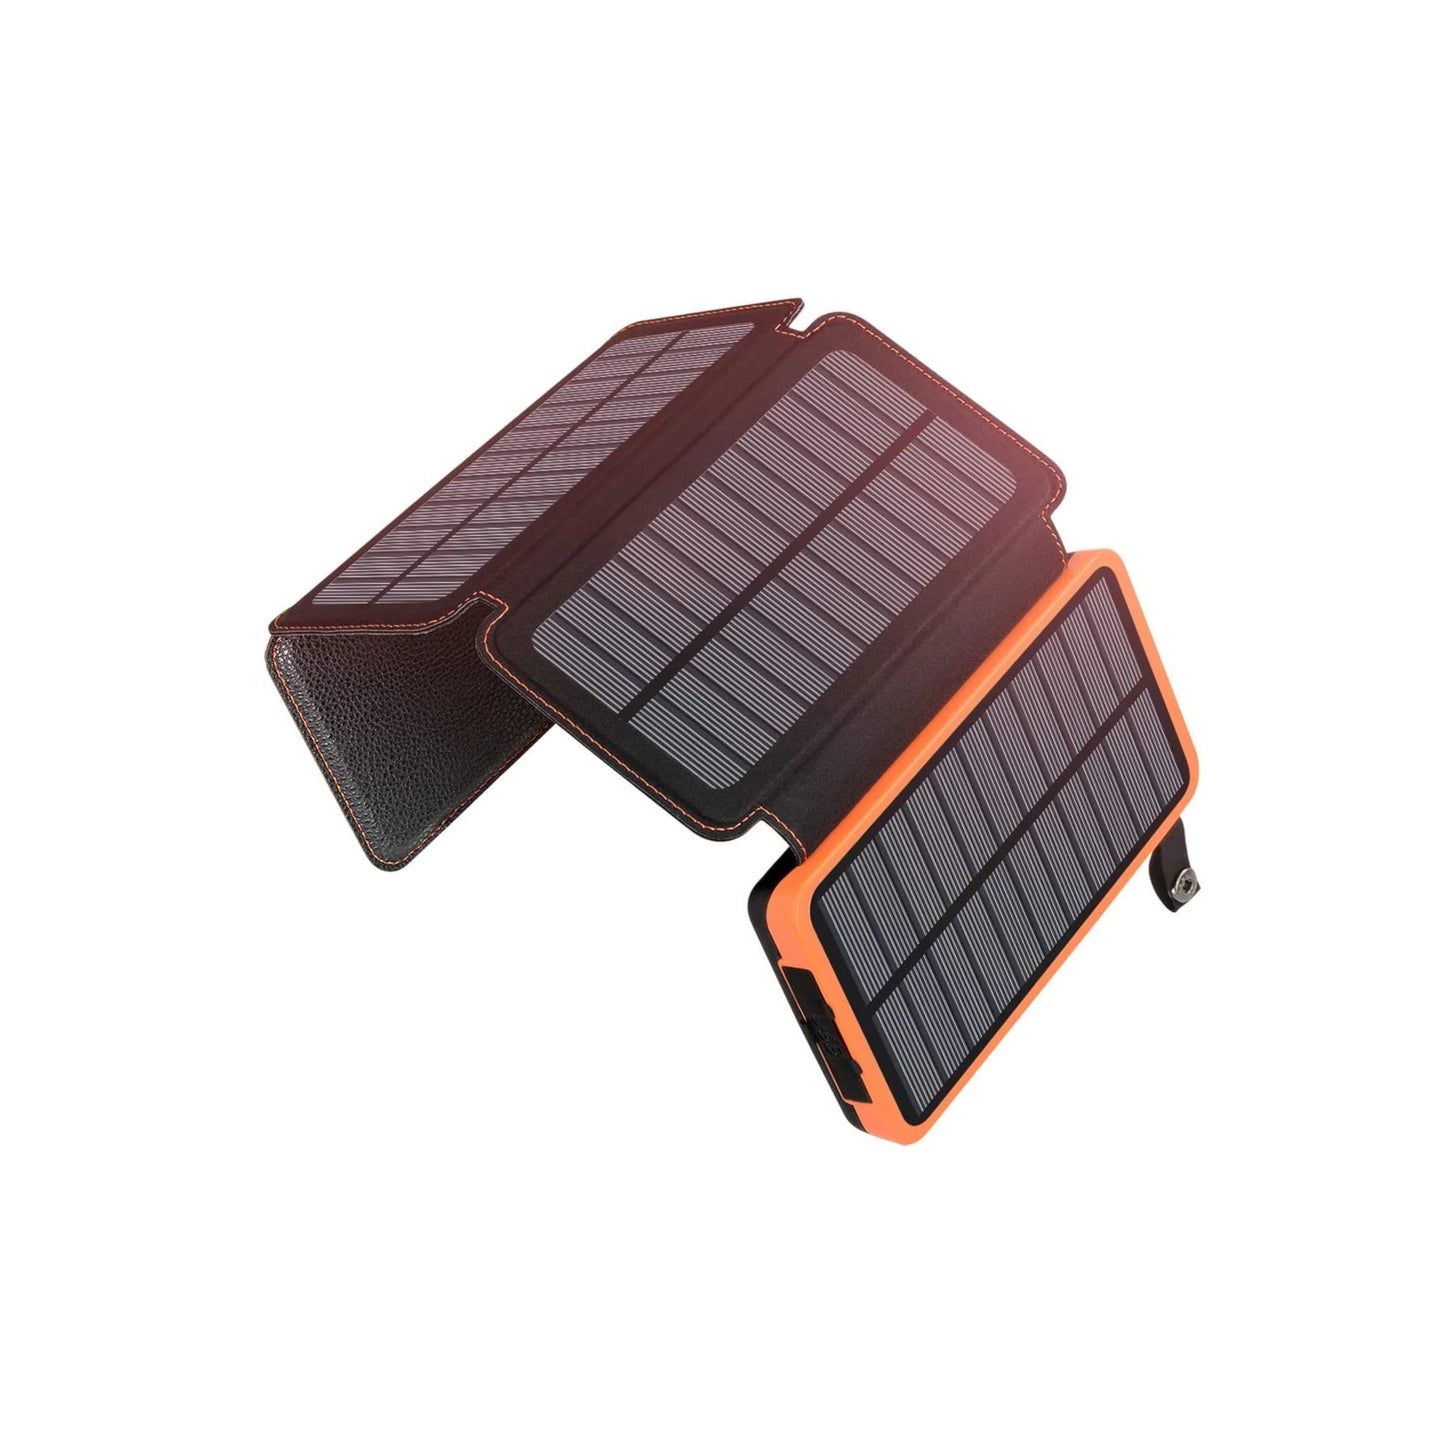 Stroomuitvalpakket Premium Blackout-kit - met gasfornuis, kookset, bestek, powerbank op zonne-energie, waterfilter, kaarsen en nog veel meer